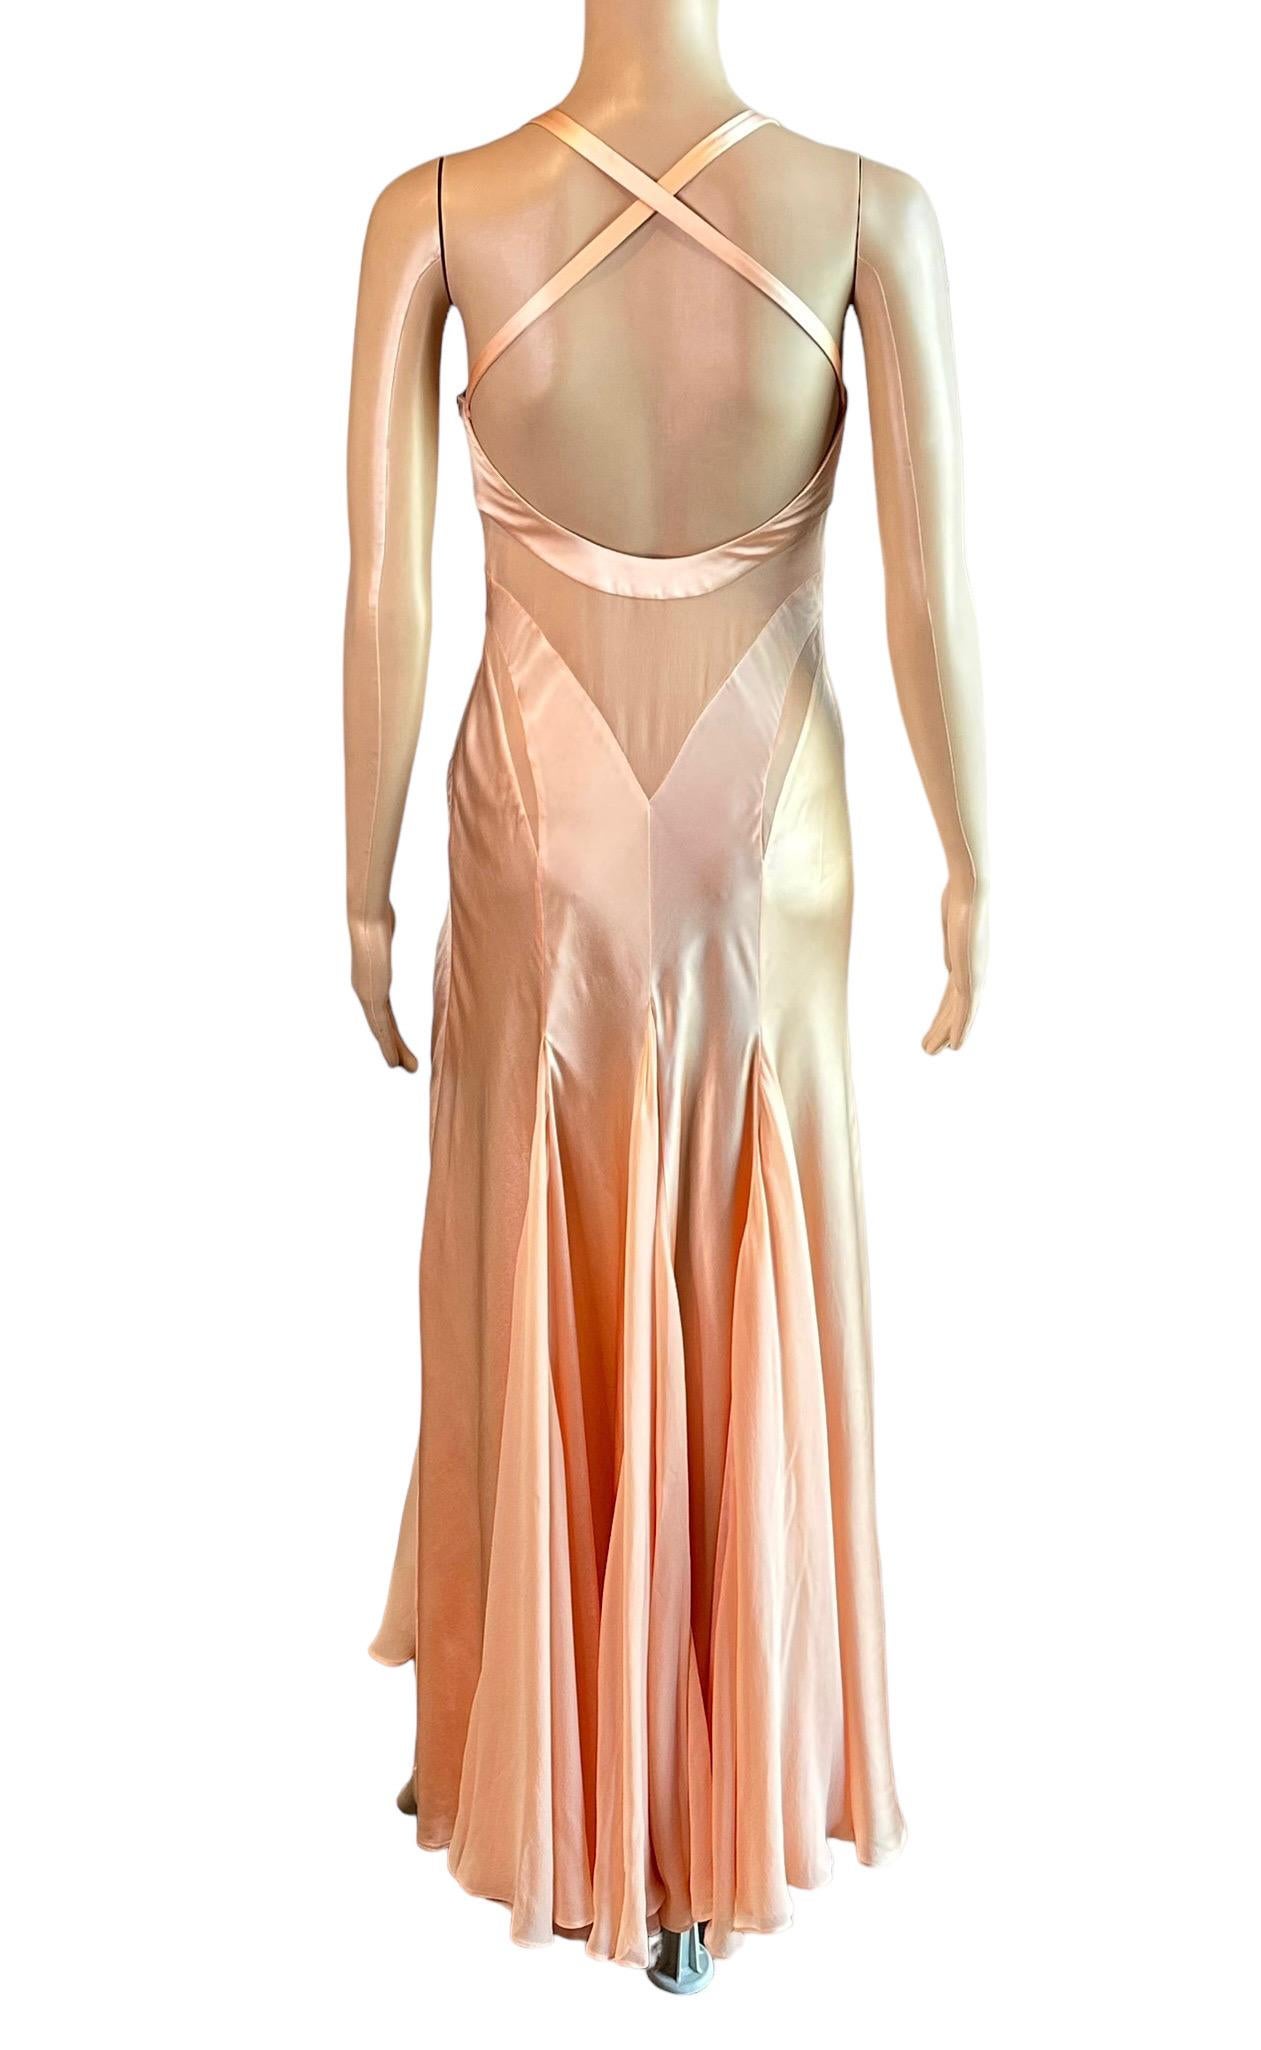 Versace S/S 2005 Laufsteg Durchsichtige Paneele Medusa Logo Seide Slip Abendkleid Kleid  3